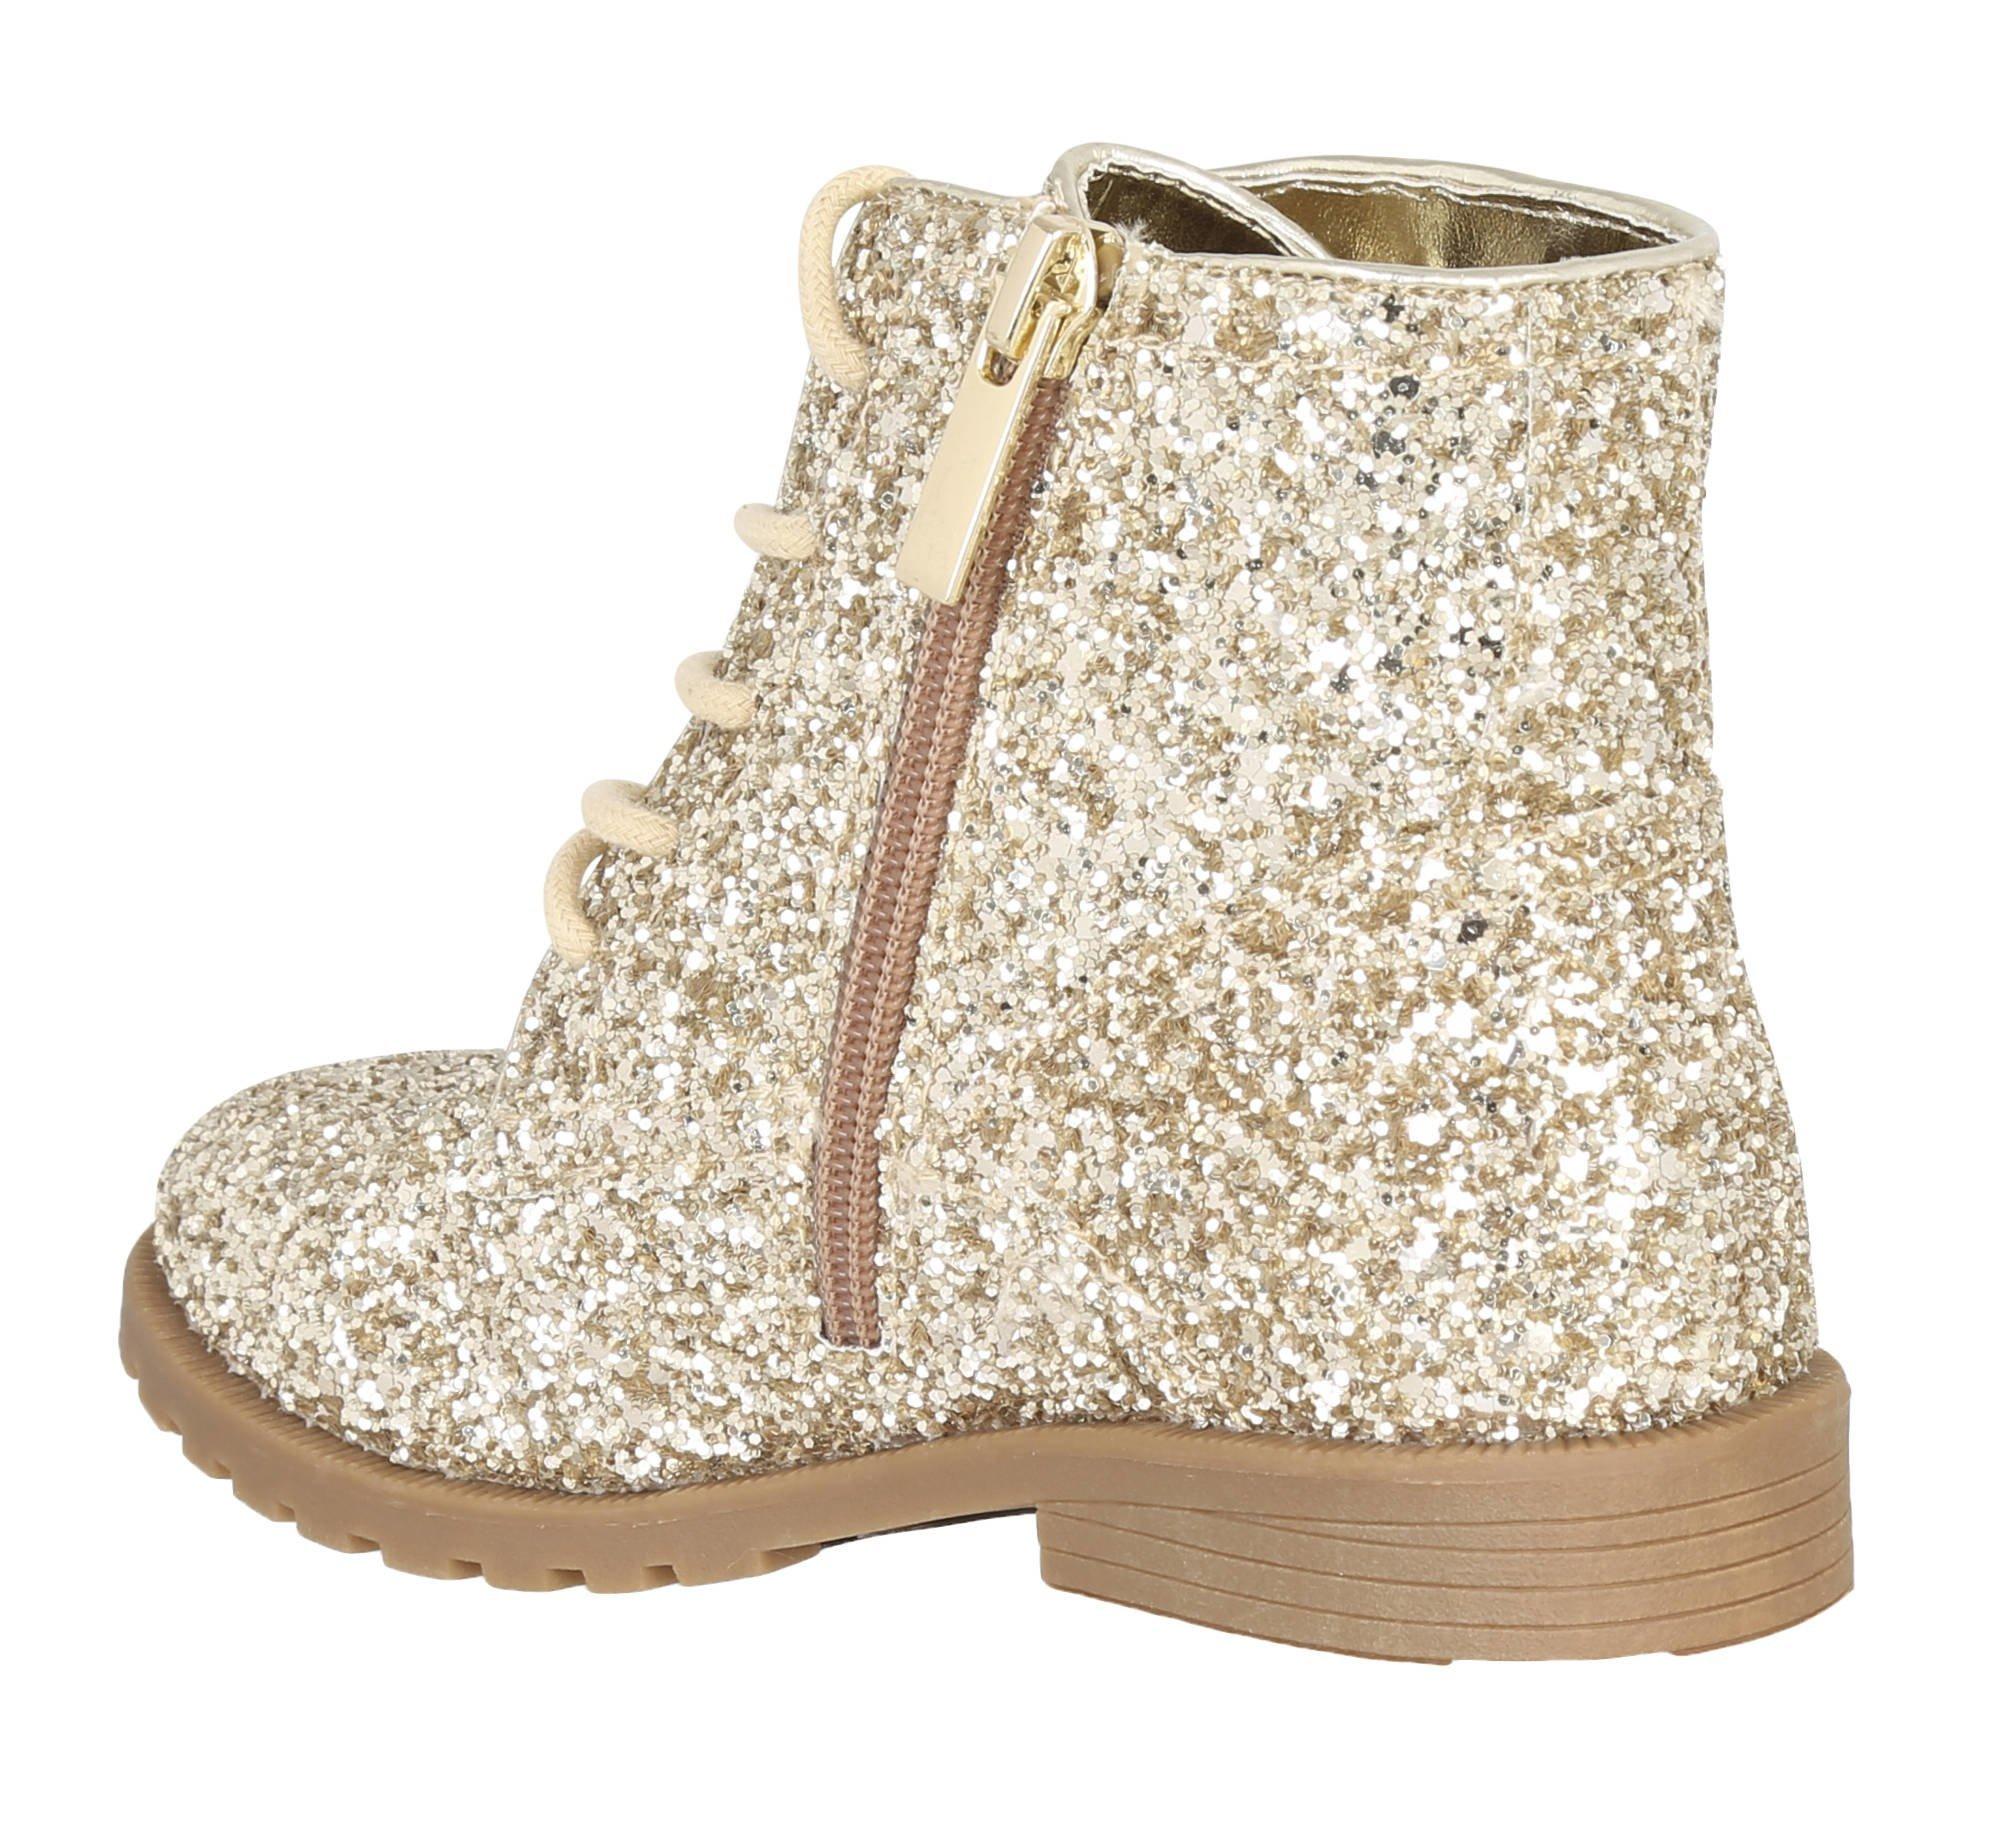 girls gold glitter boots